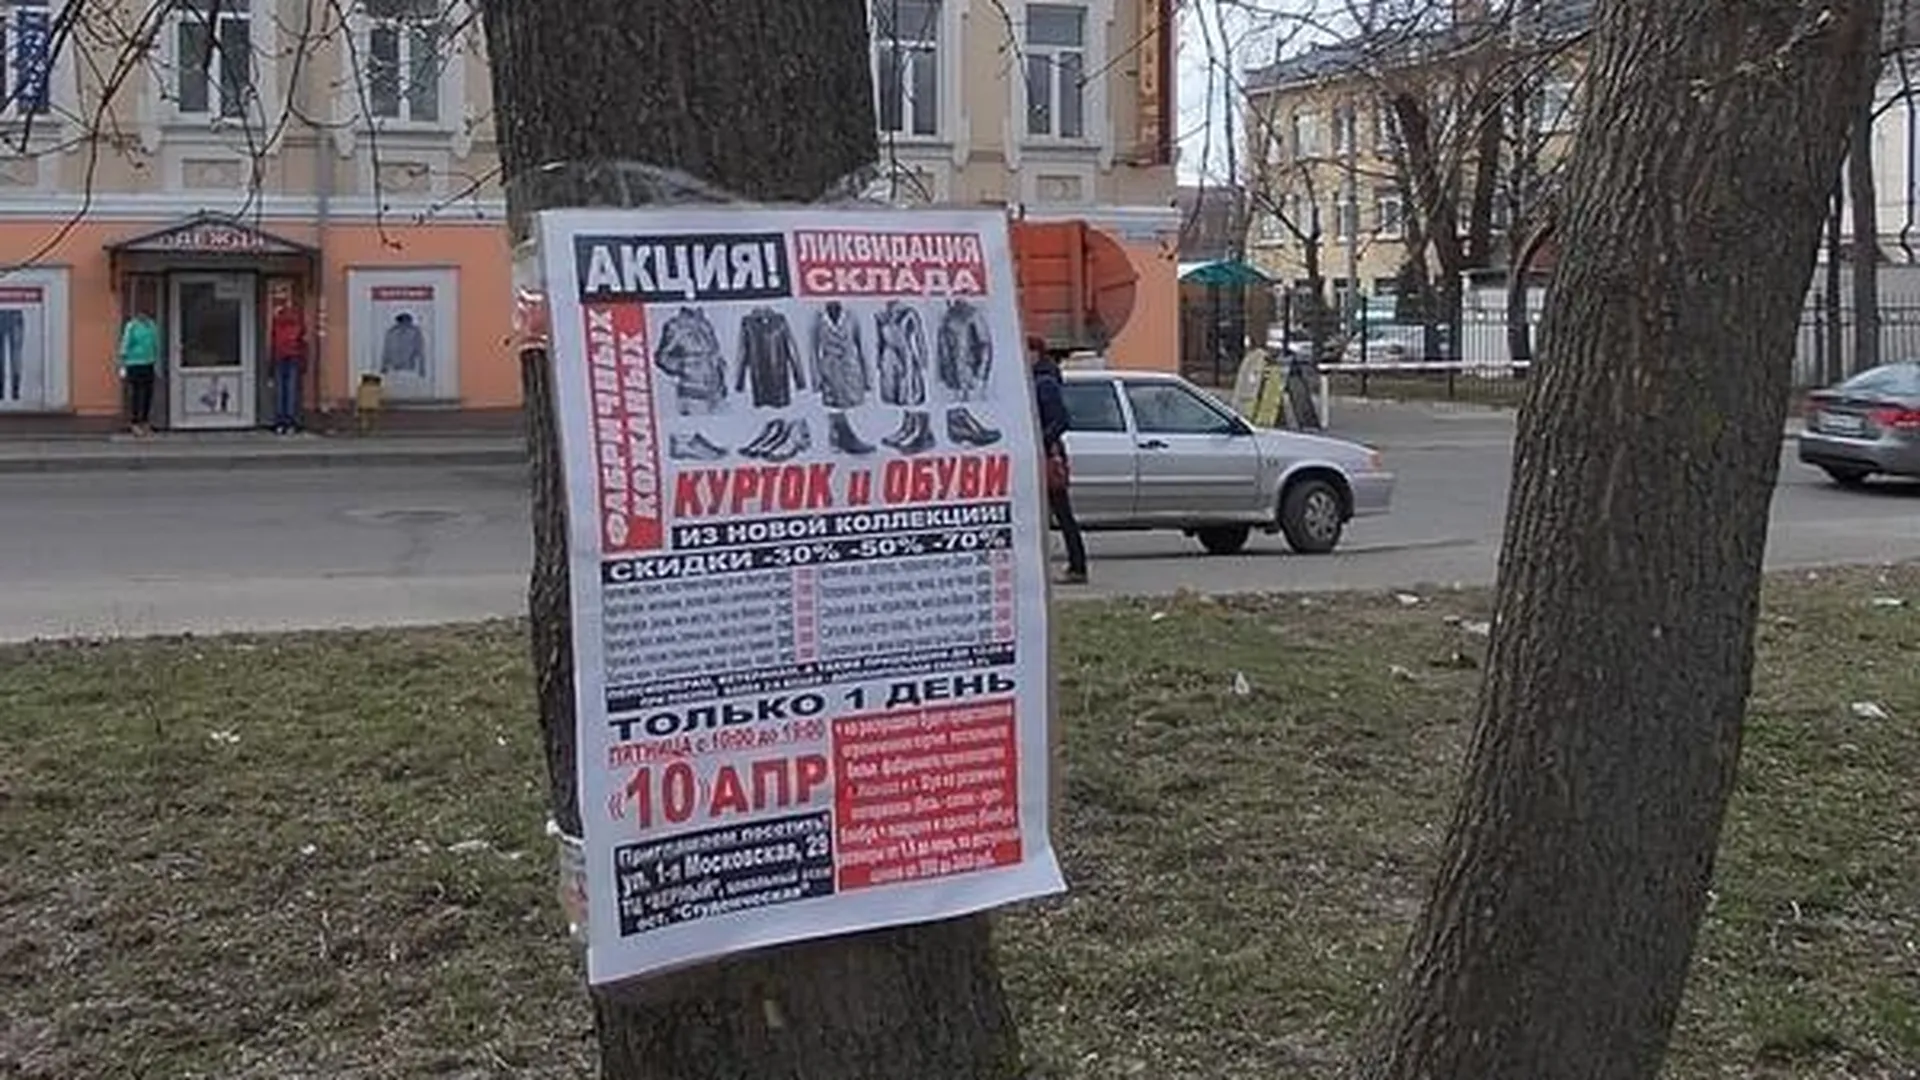 Незаконную расклейку объявлений пресекли в Серпухове